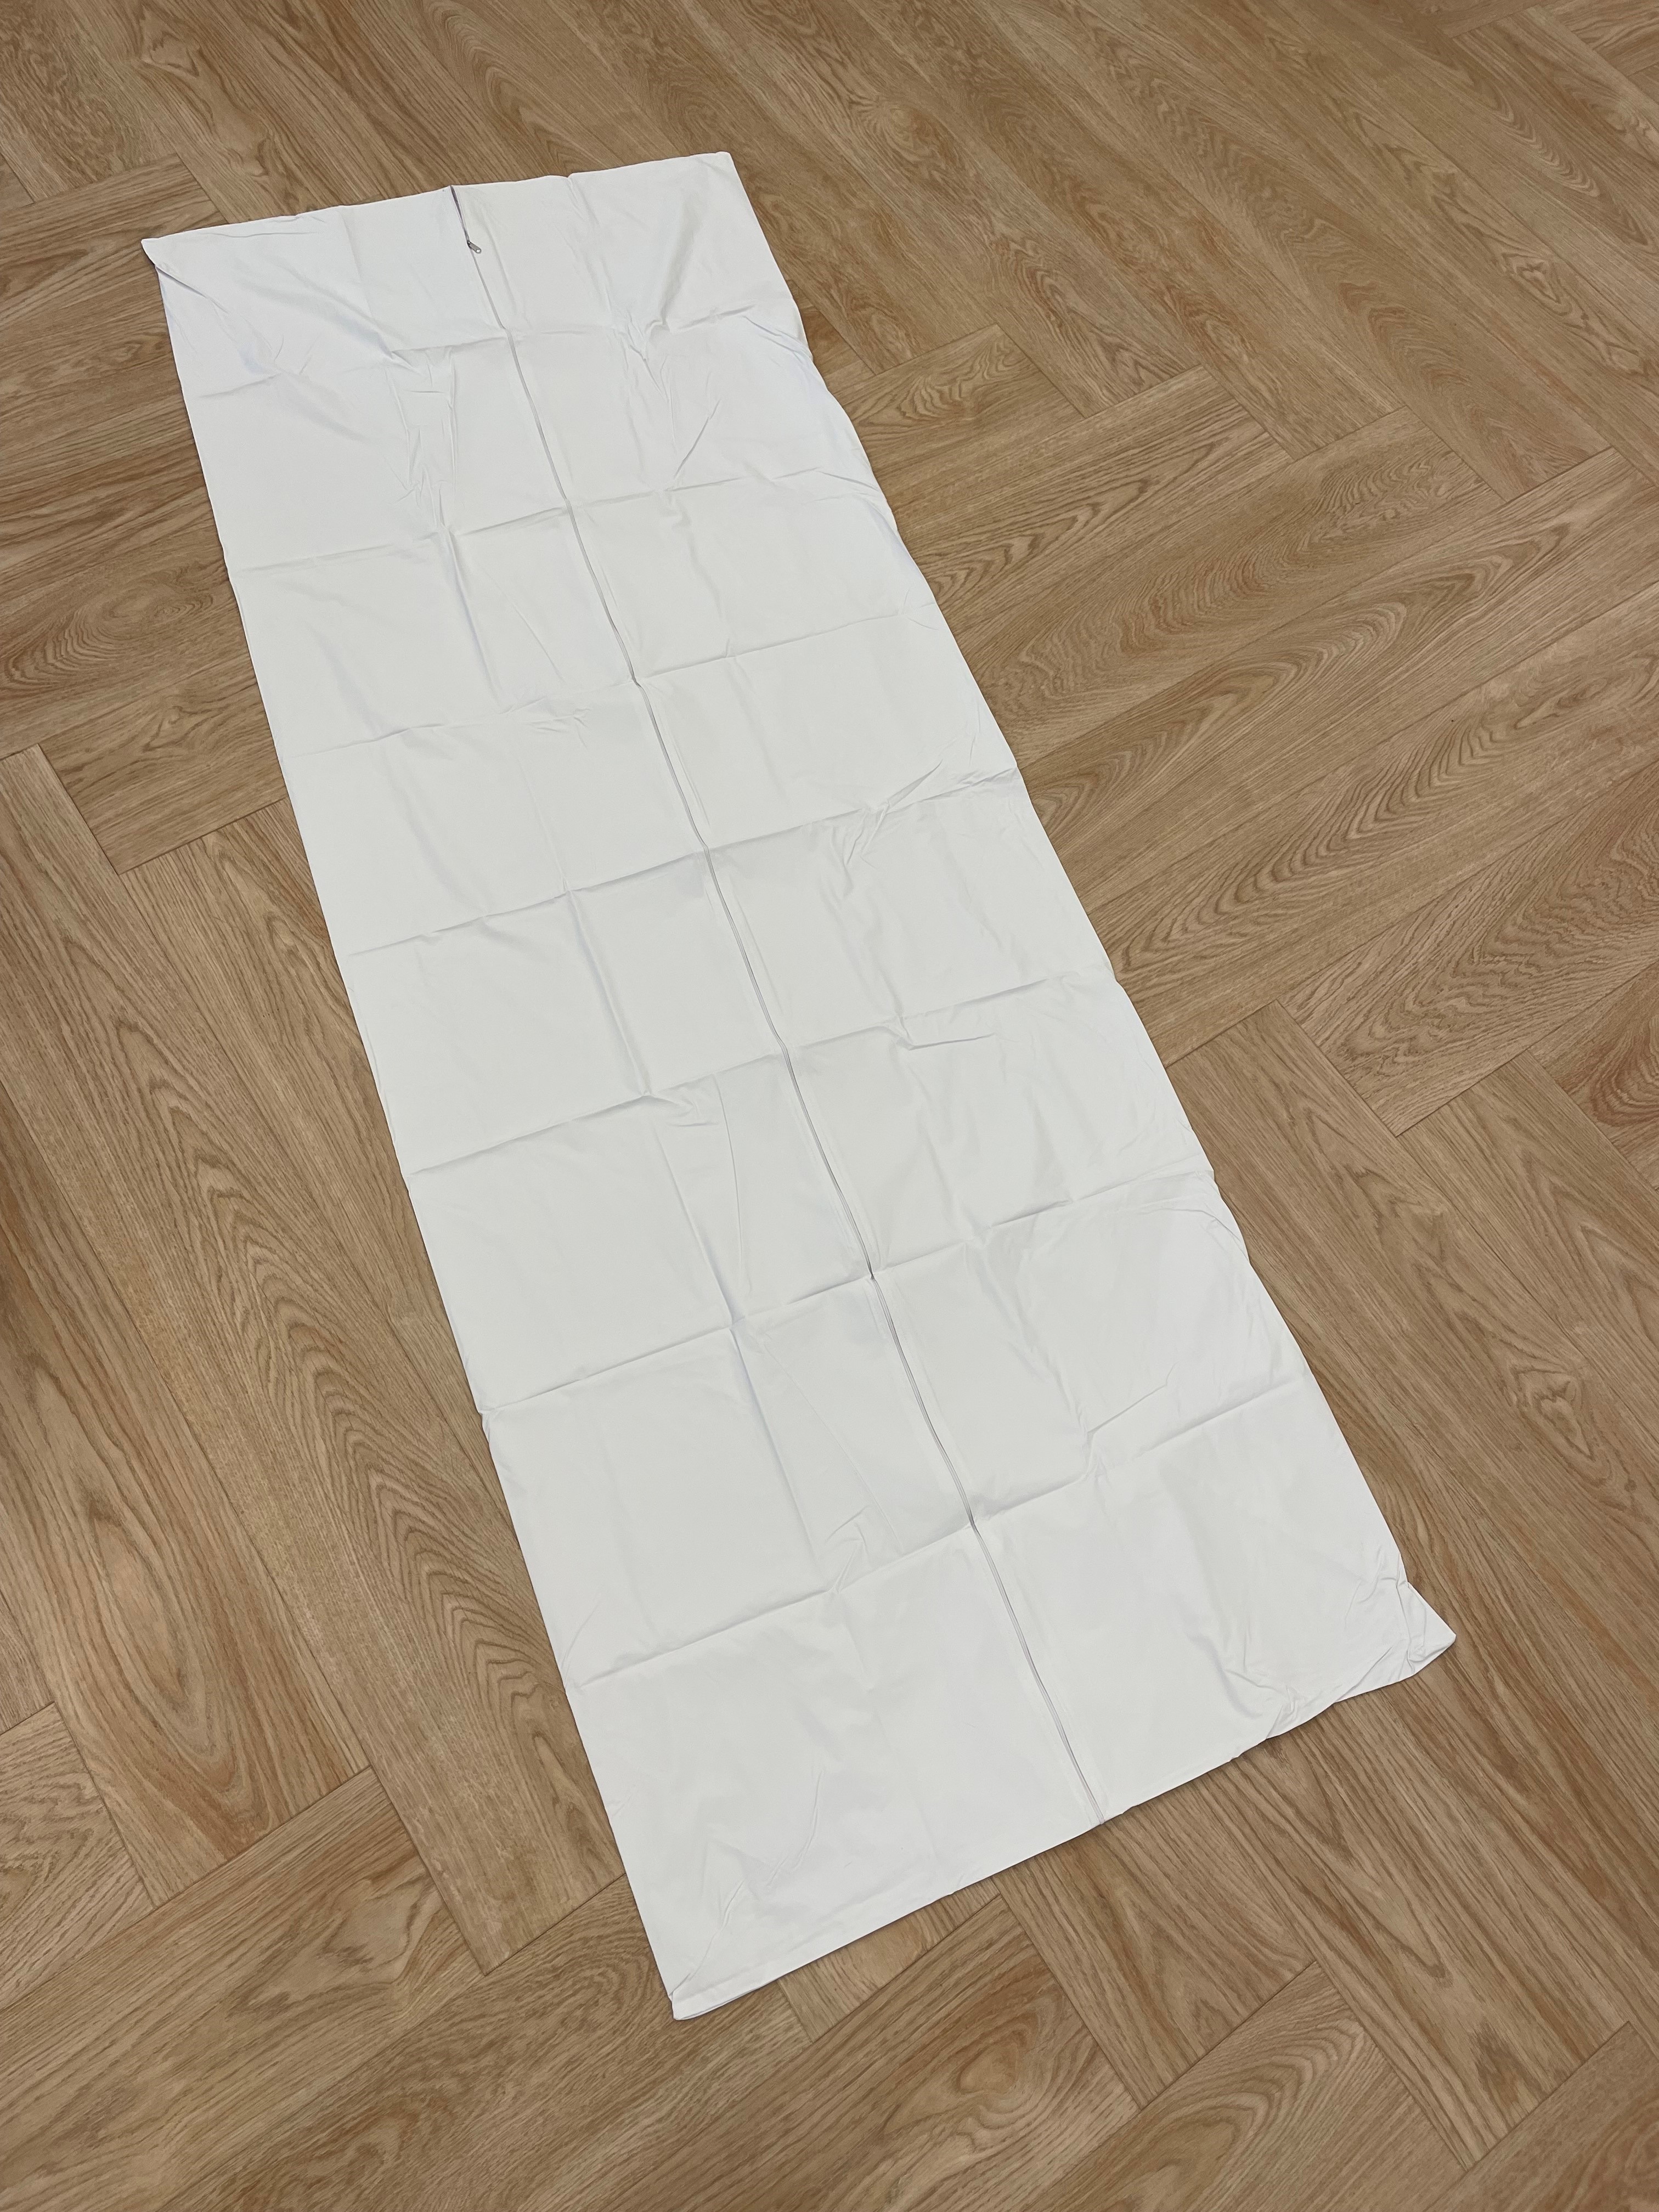 BODY-BAG-WH Romed lijkenzak wit, zonder handels, 220x80 cm, per stuk verpakt in een polyzakje, 20 stuks in een carton.